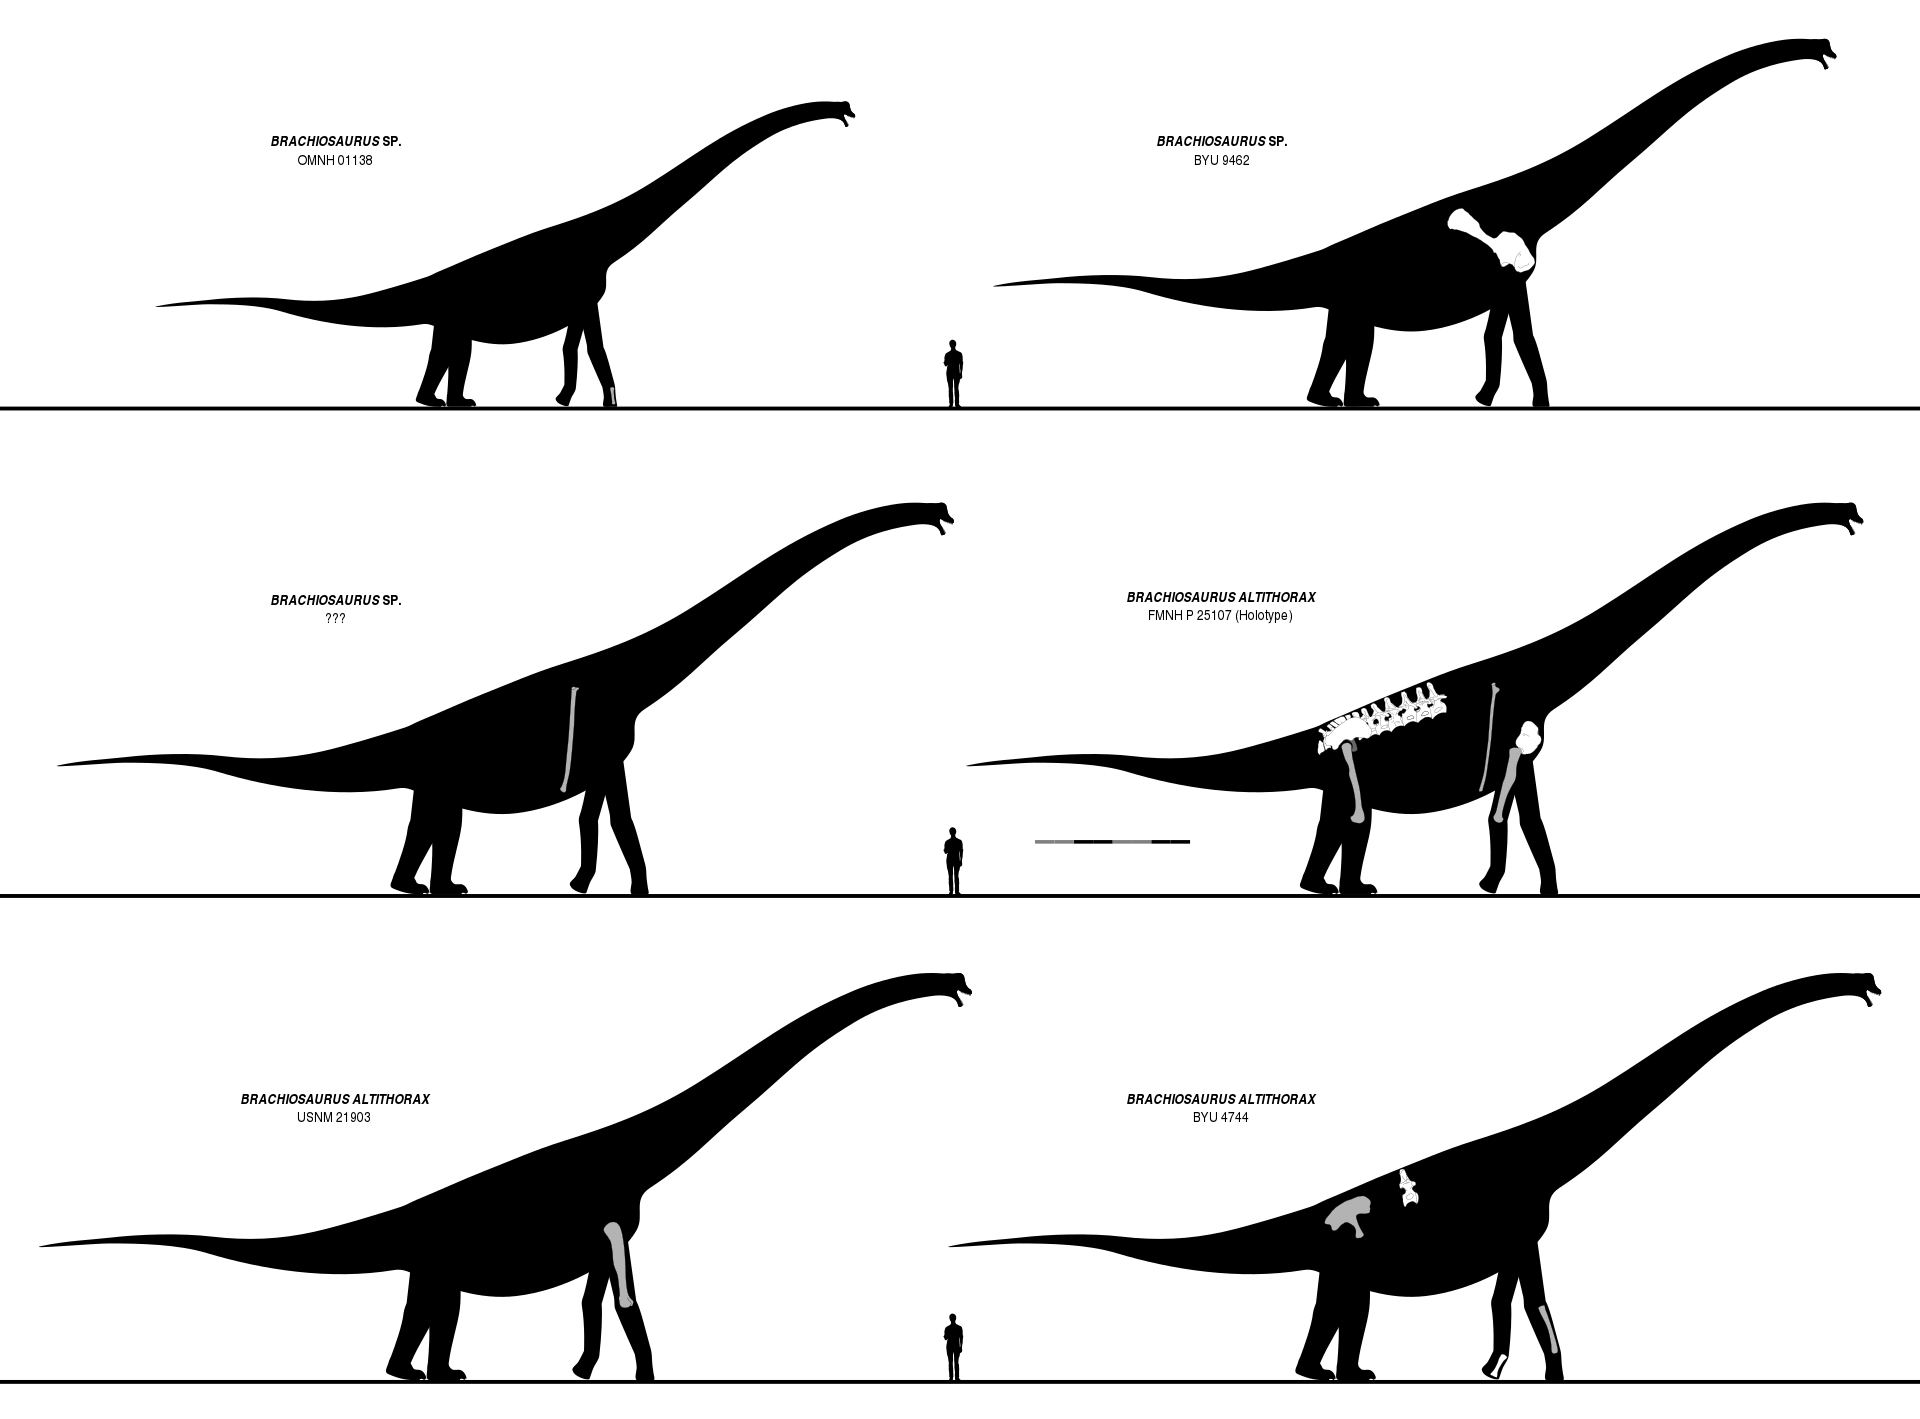 Kosterní rekonstrukce šesti exemplářů brachiosaura ukazují, jak malou část kostry tohoto obřího brachiosaurida ve skutečnosti známe. Prakticky všechny obrazové rekonstrukce severoamerického brachiosaura (včetně jeho podoby v Jurském parku) jsou proto